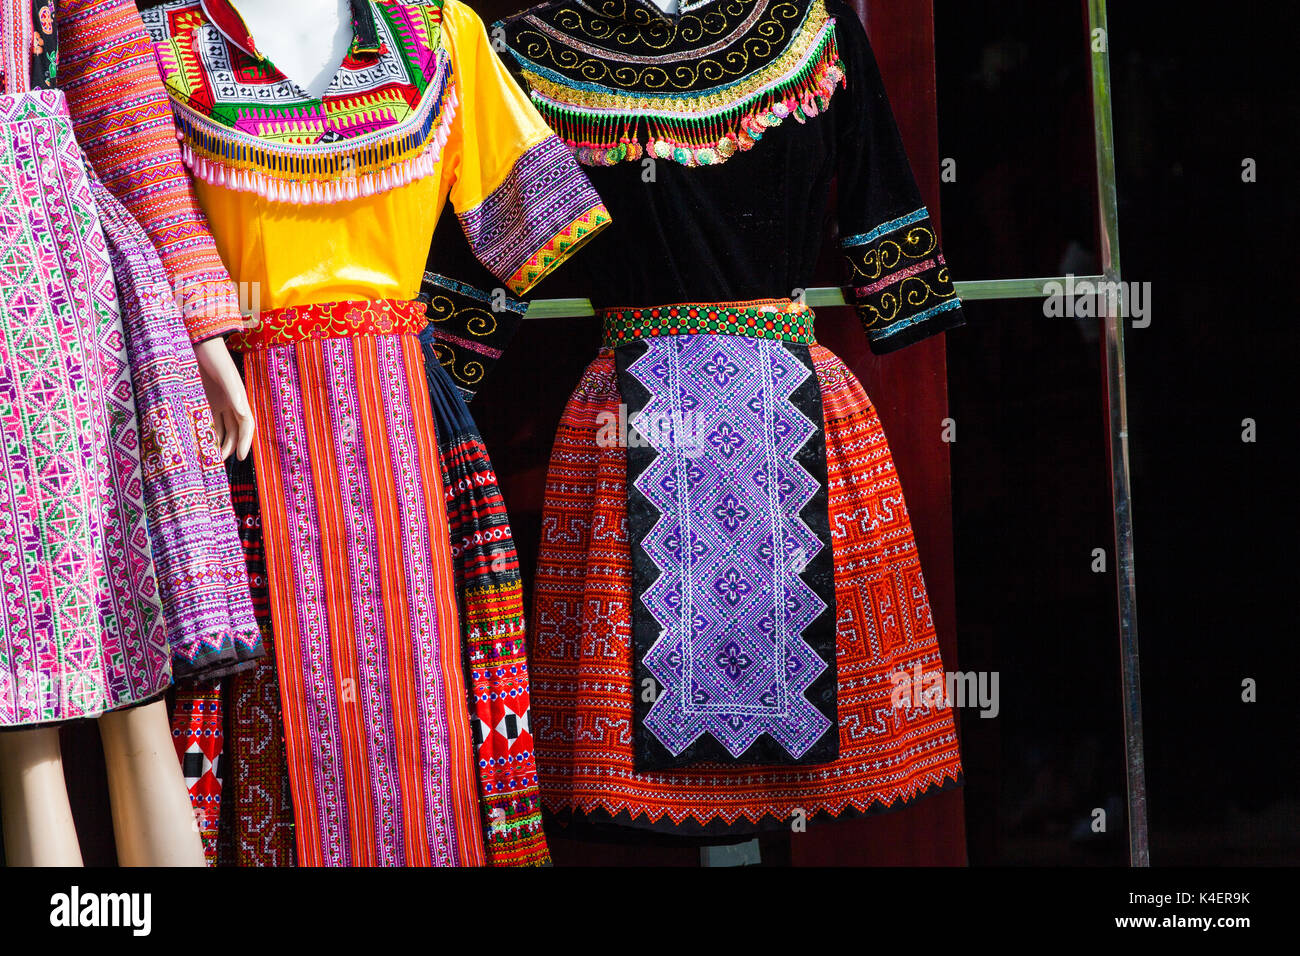 Ropa artesanal con patrones étnicos hmong. hmong son un grupo étnico de las regiones montañosas de China, y Tailandia Fotografía de stock Alamy